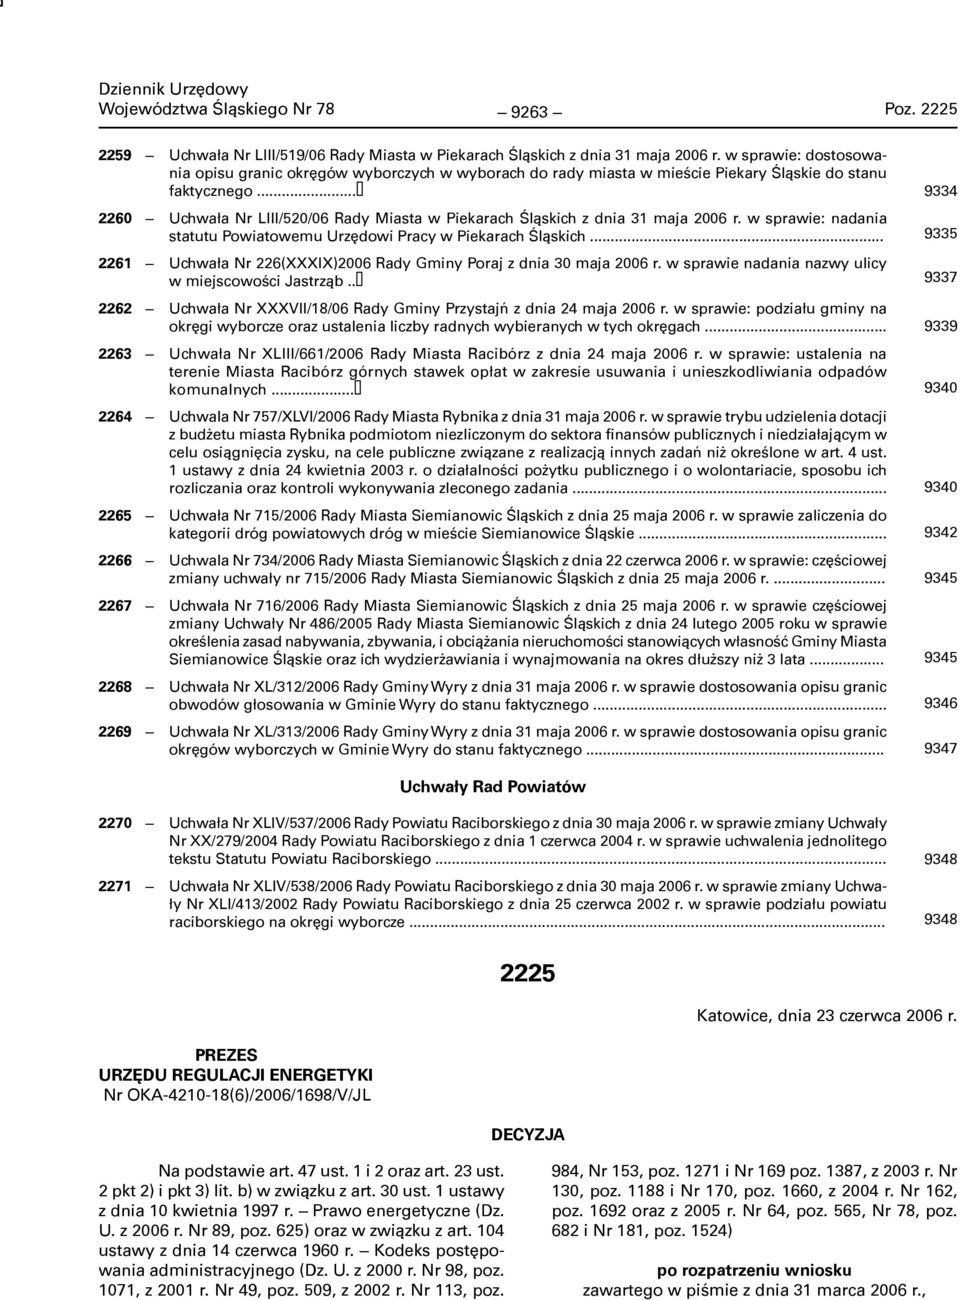 .. 2260 Uchwała Nr LIII/520/06 Rady Miasta w Piekarach Śląskich z dnia 31 maja 2006 r. w sprawie: nadania statutu Powiatowemu Urzędowi Pracy w Piekarach Śląskich.